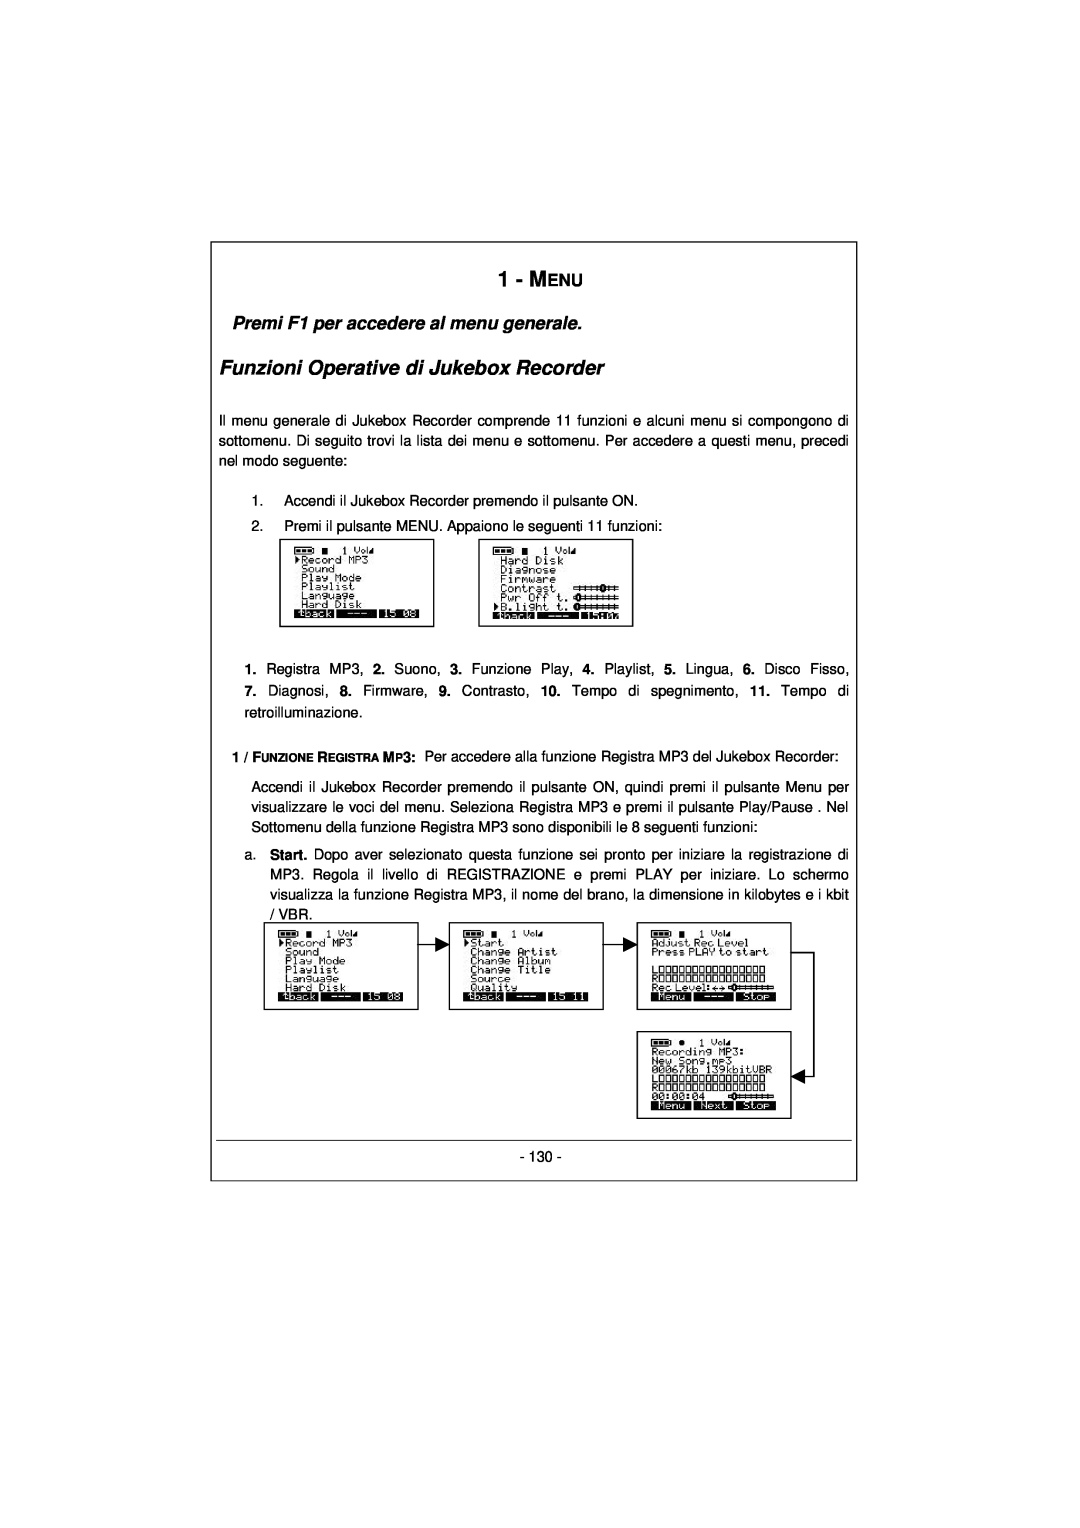 Archos 100628 manual Funzioni Operative di Jukebox Recorder, Premi F1 per accedere al menu generale, Menu 